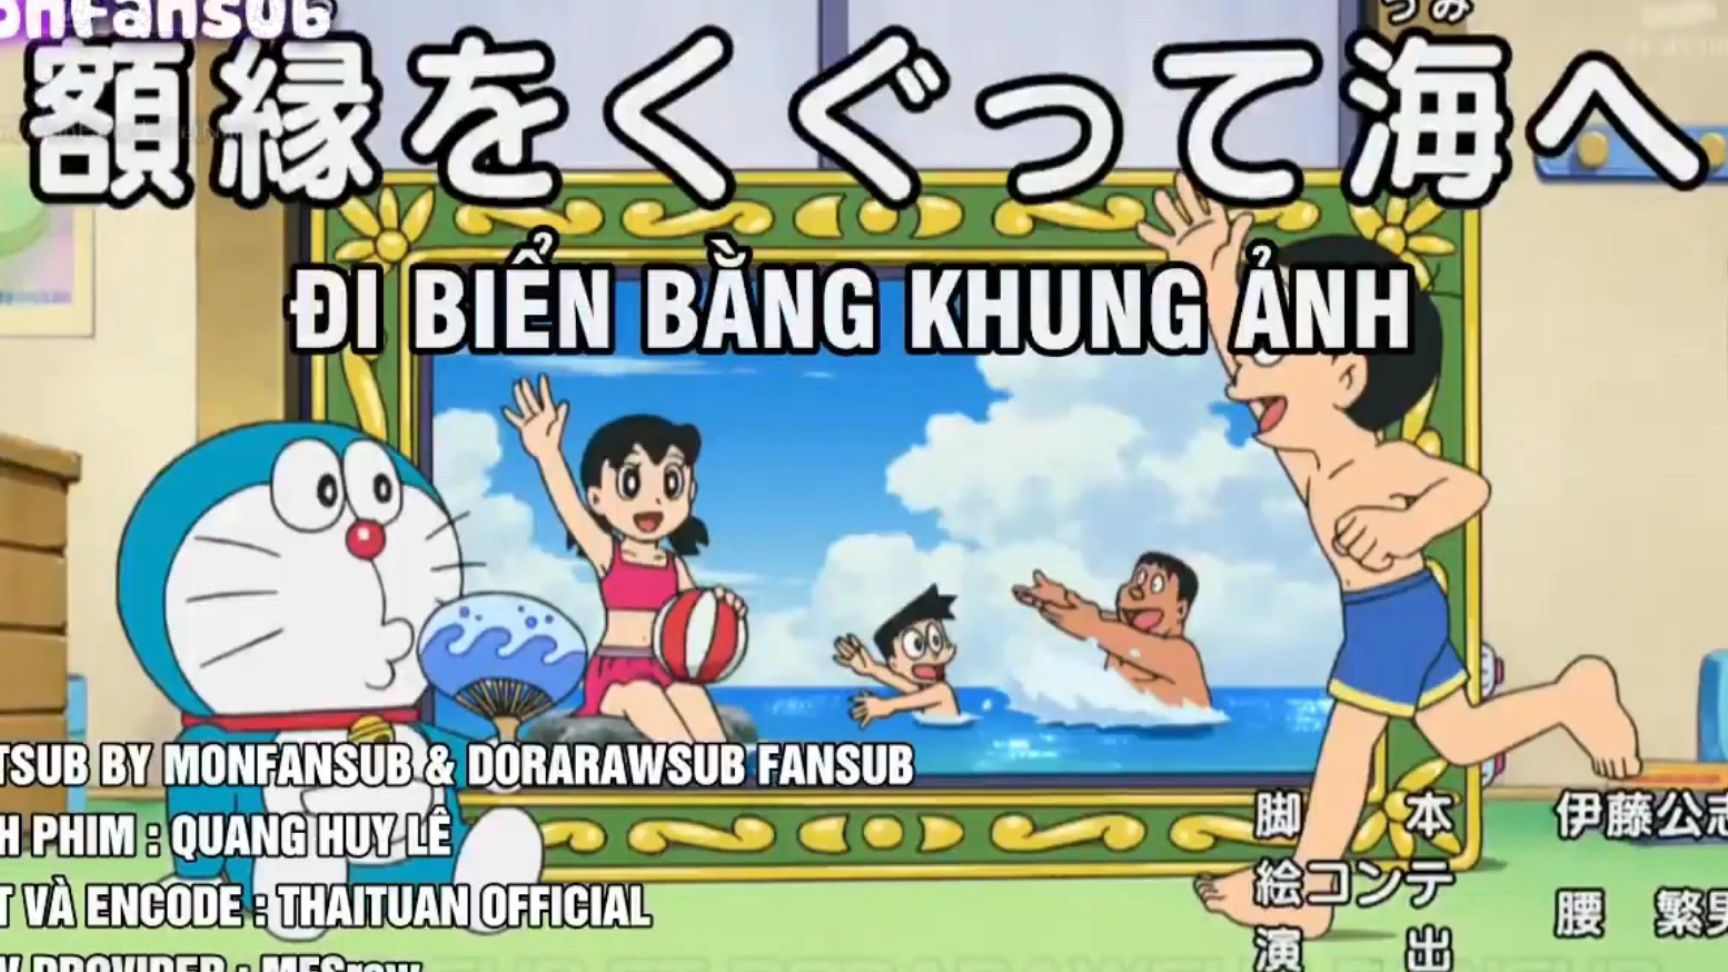 Doraemon: Hãy cùng khám phá những khoảnh khắc vui nhộn khi Doraemon và những người bạn cùng đi biển trong khung ảnh đầy màu sắc!